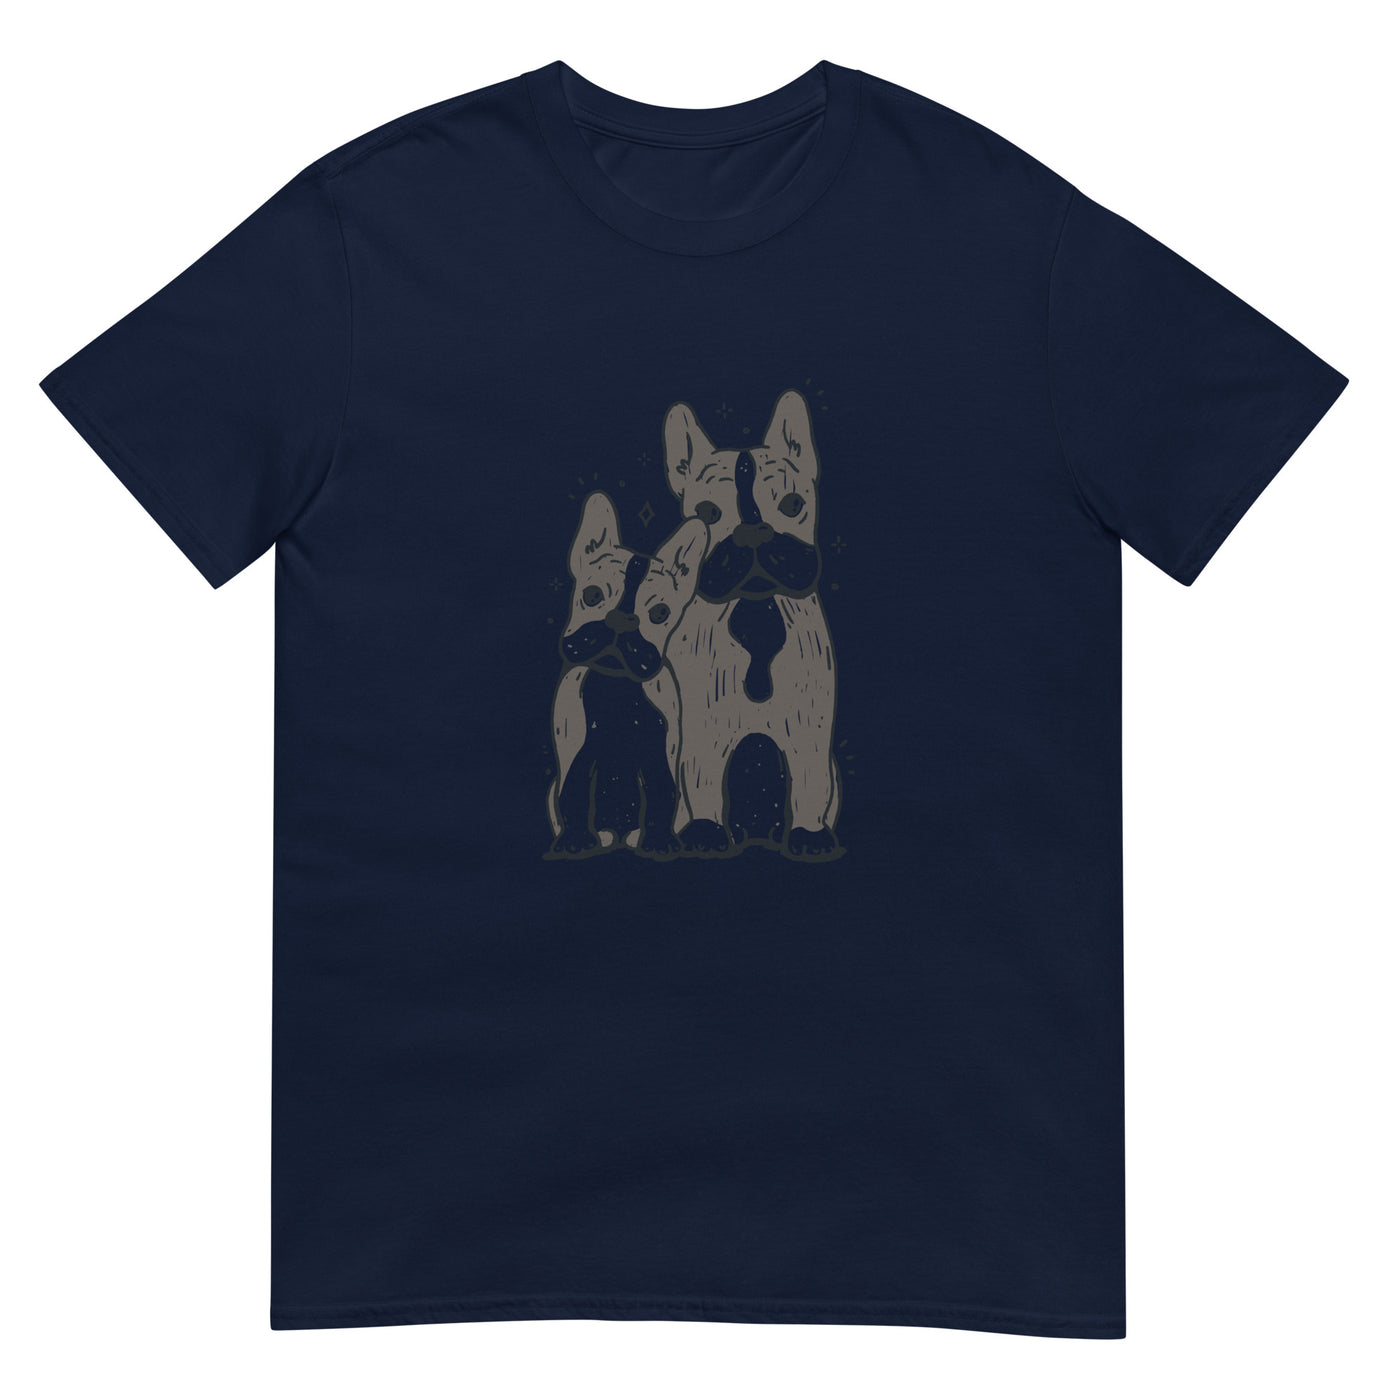 Französische Bulldoggen in Duo-Ton-Illustration - Herren T-Shirt Other_Niches xxx yyy zzz Navy